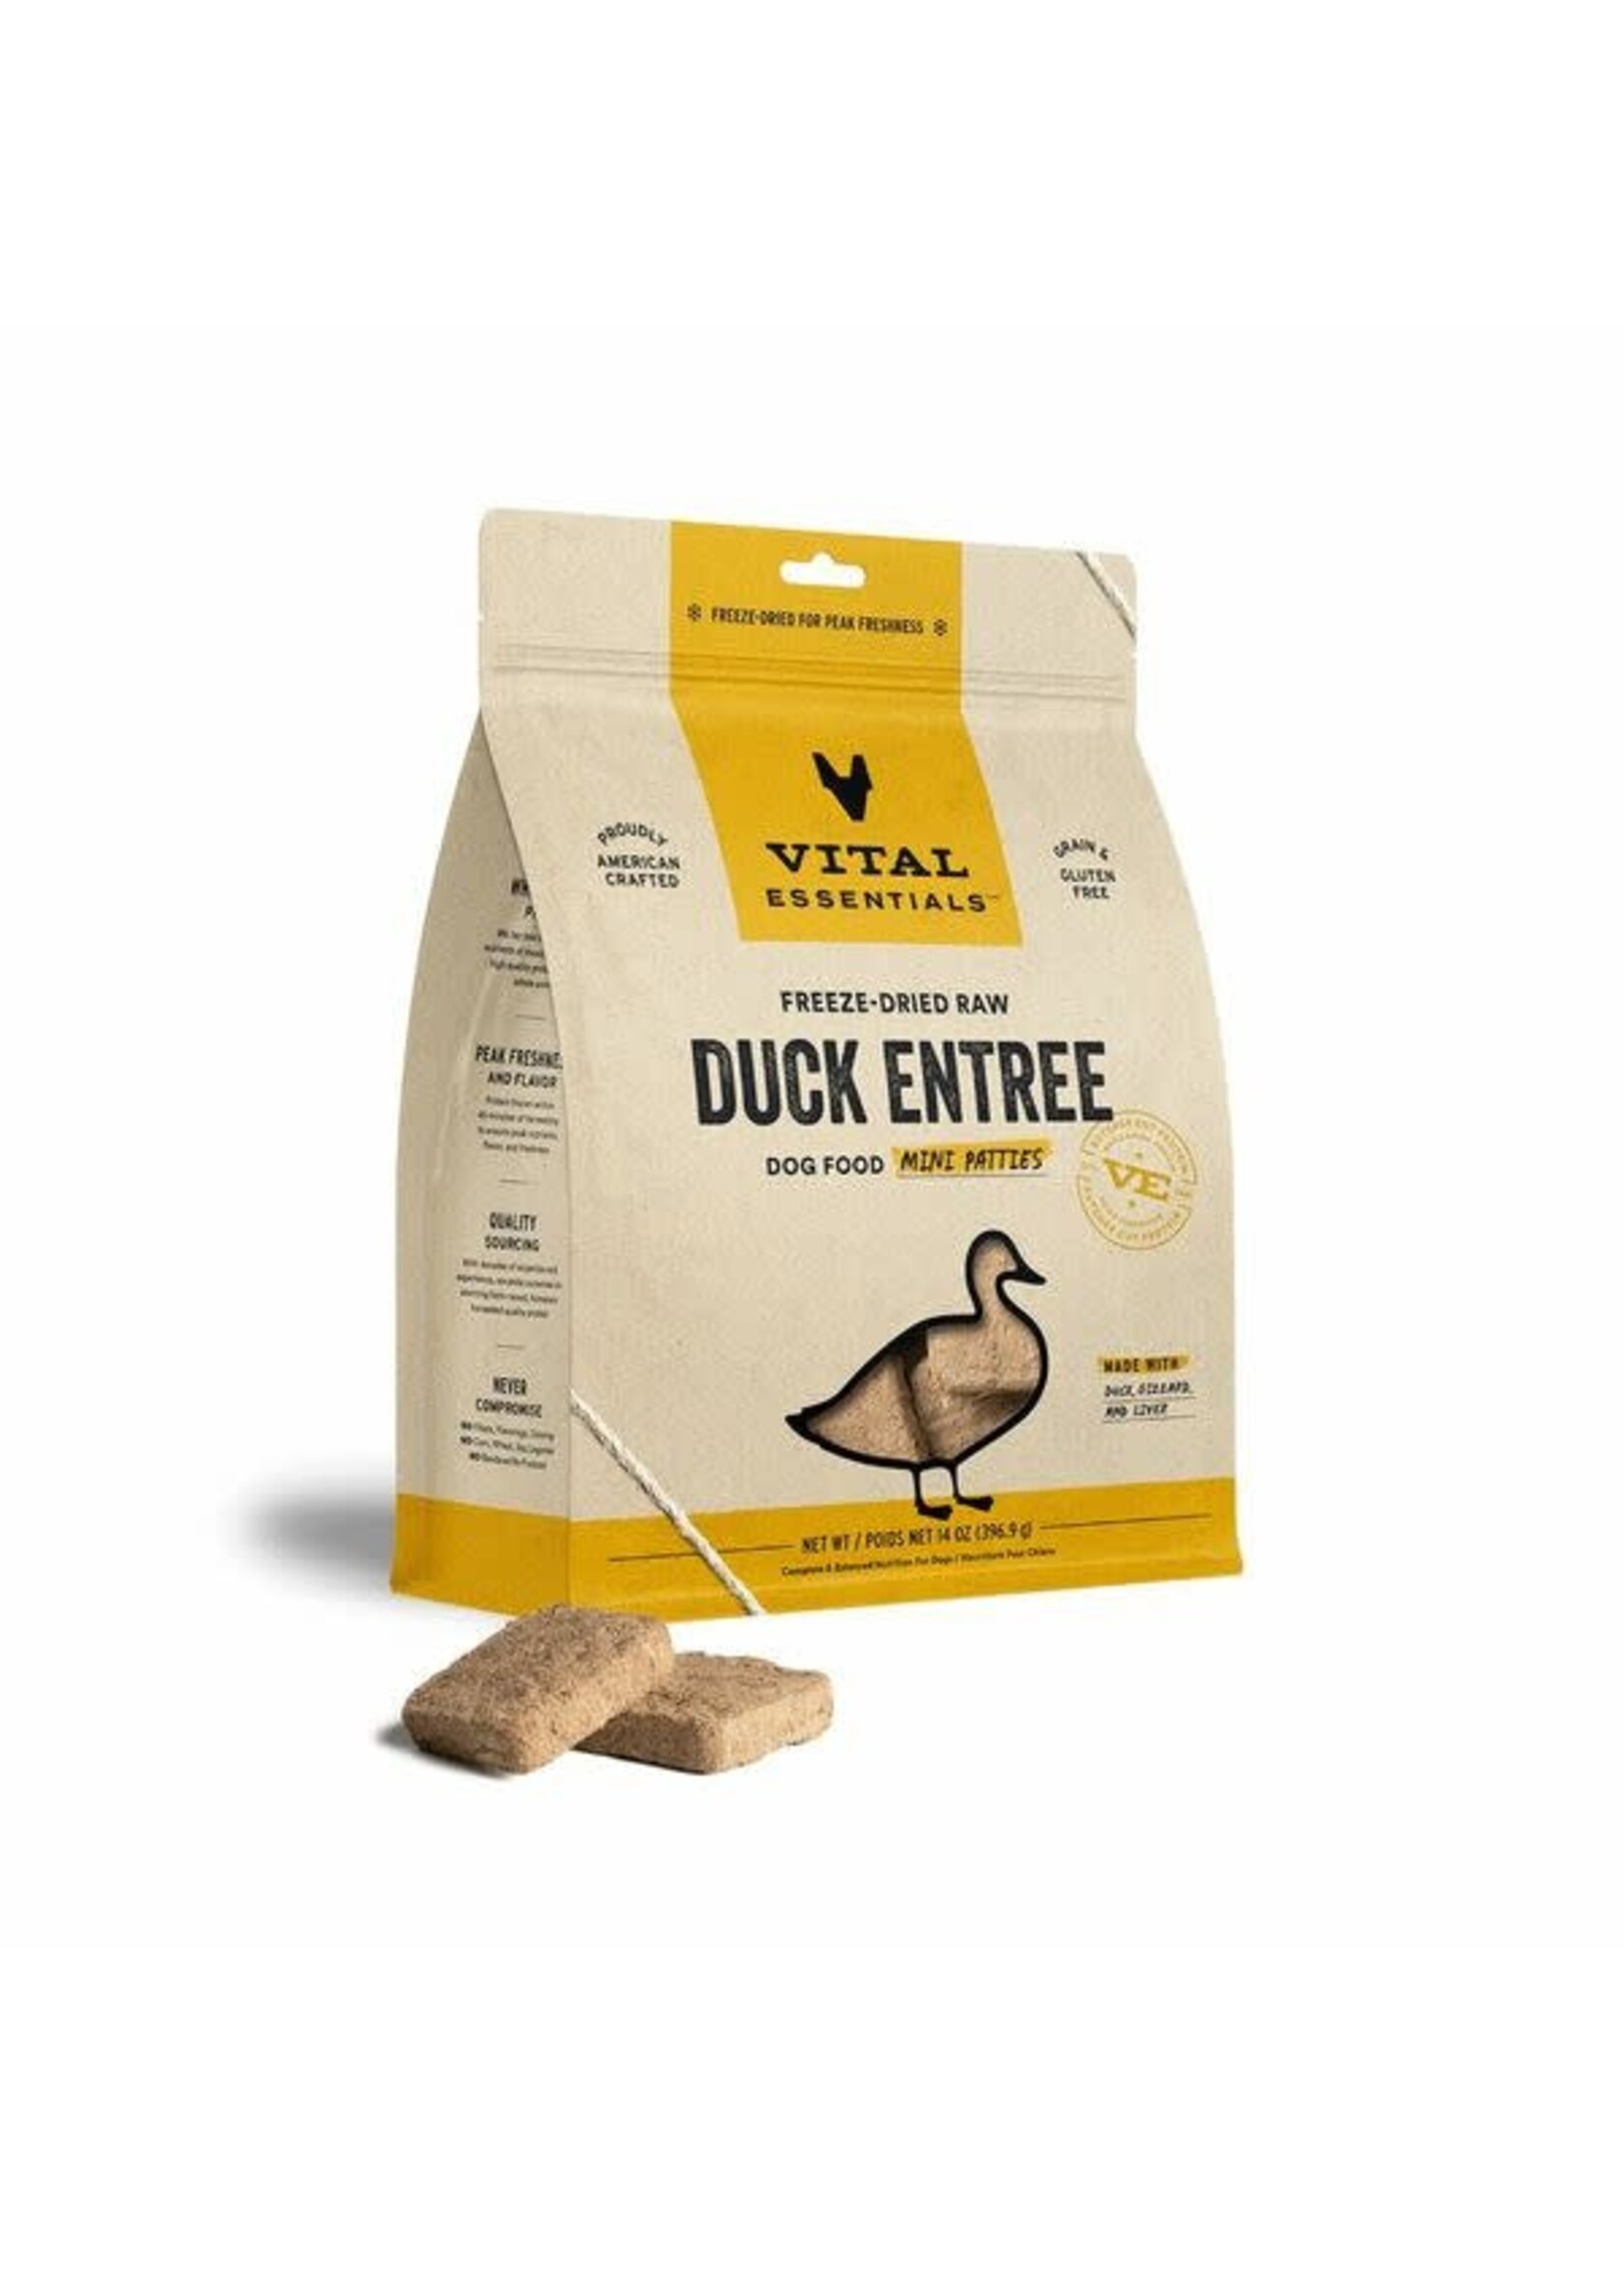 Vital Essentials Vital Essentials FD Raw Duck Entree Mini Patties 14 oz